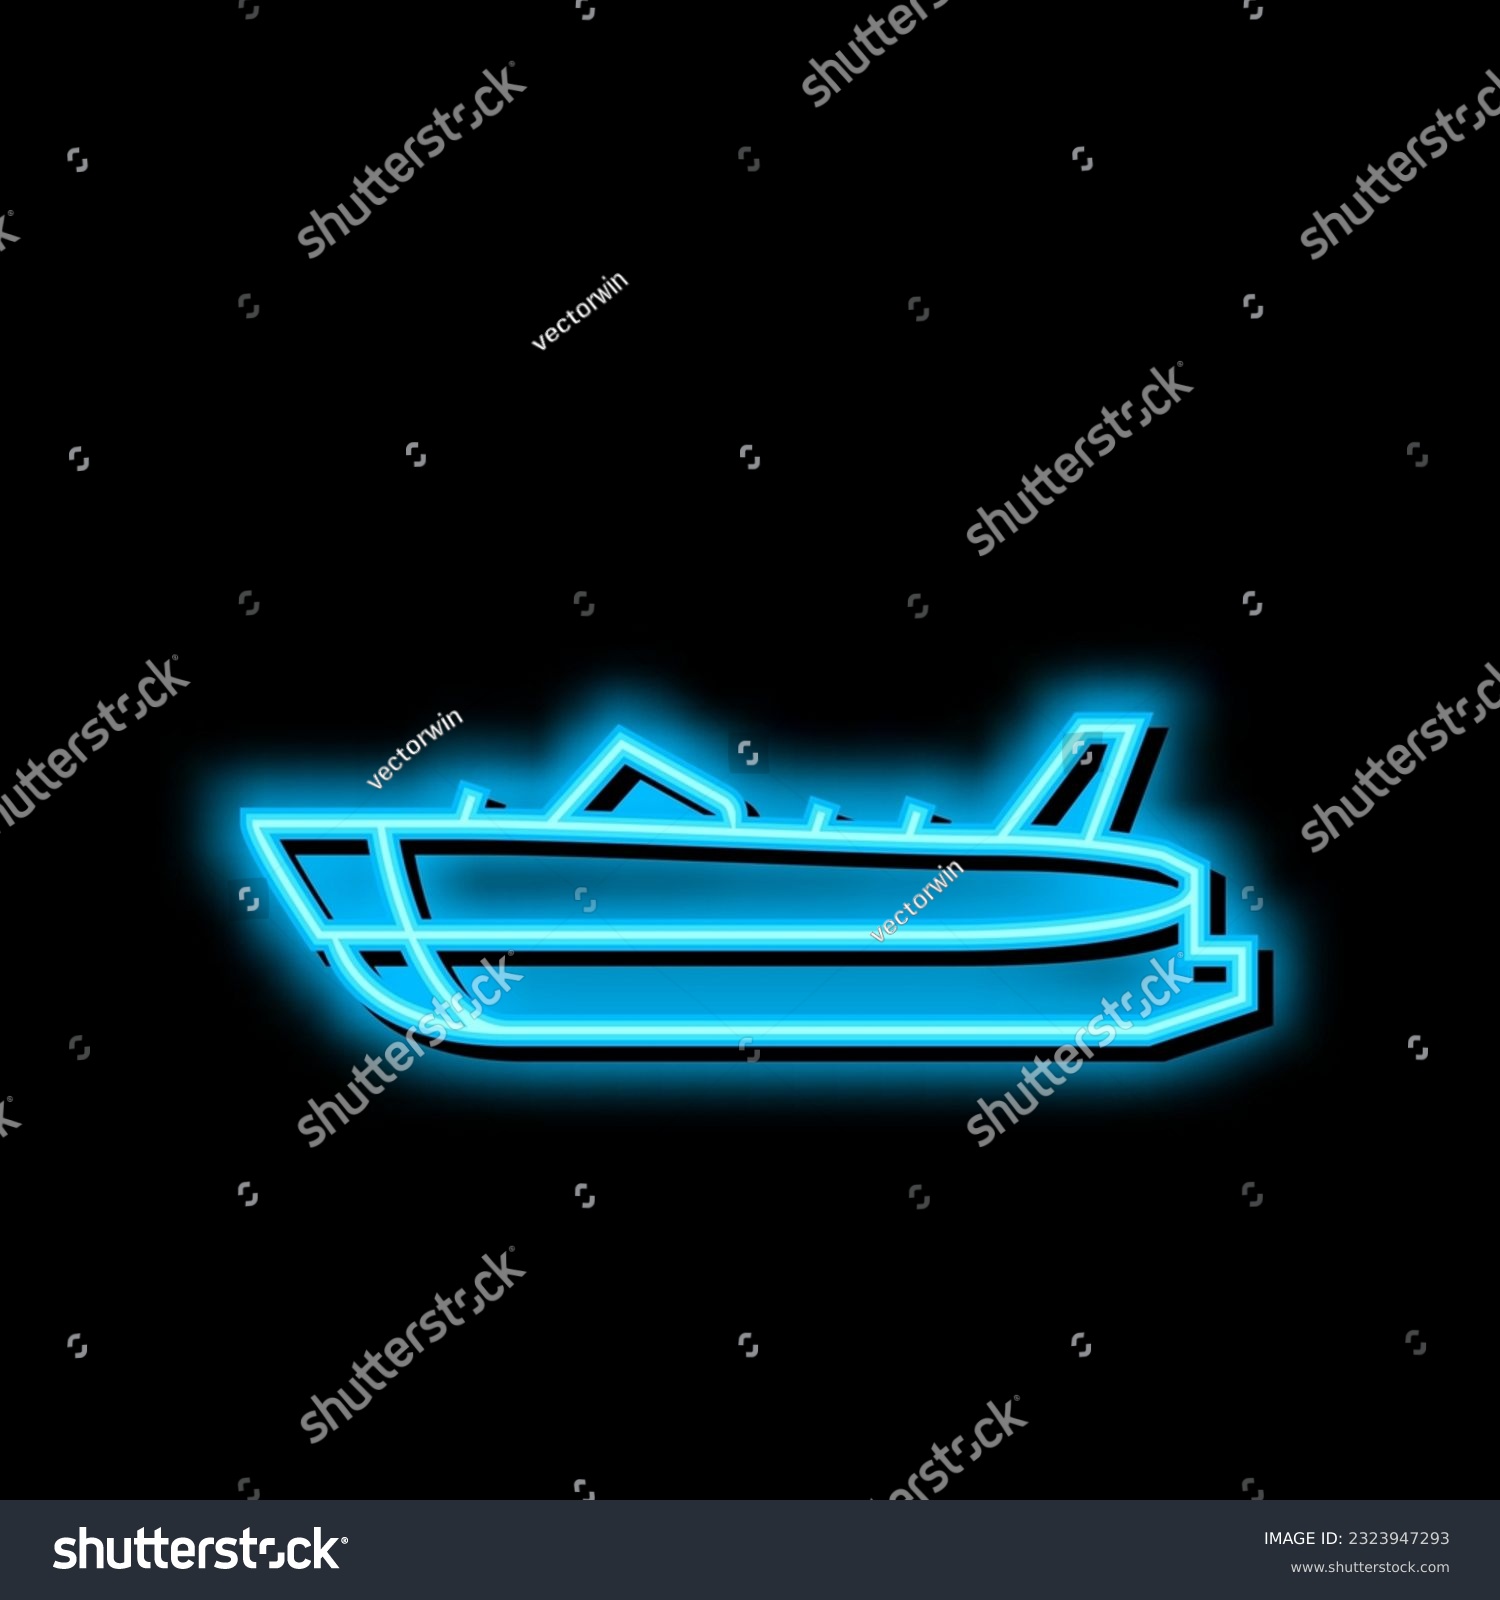 SVG of deck boat neon light sign vector. deck boat illustration svg